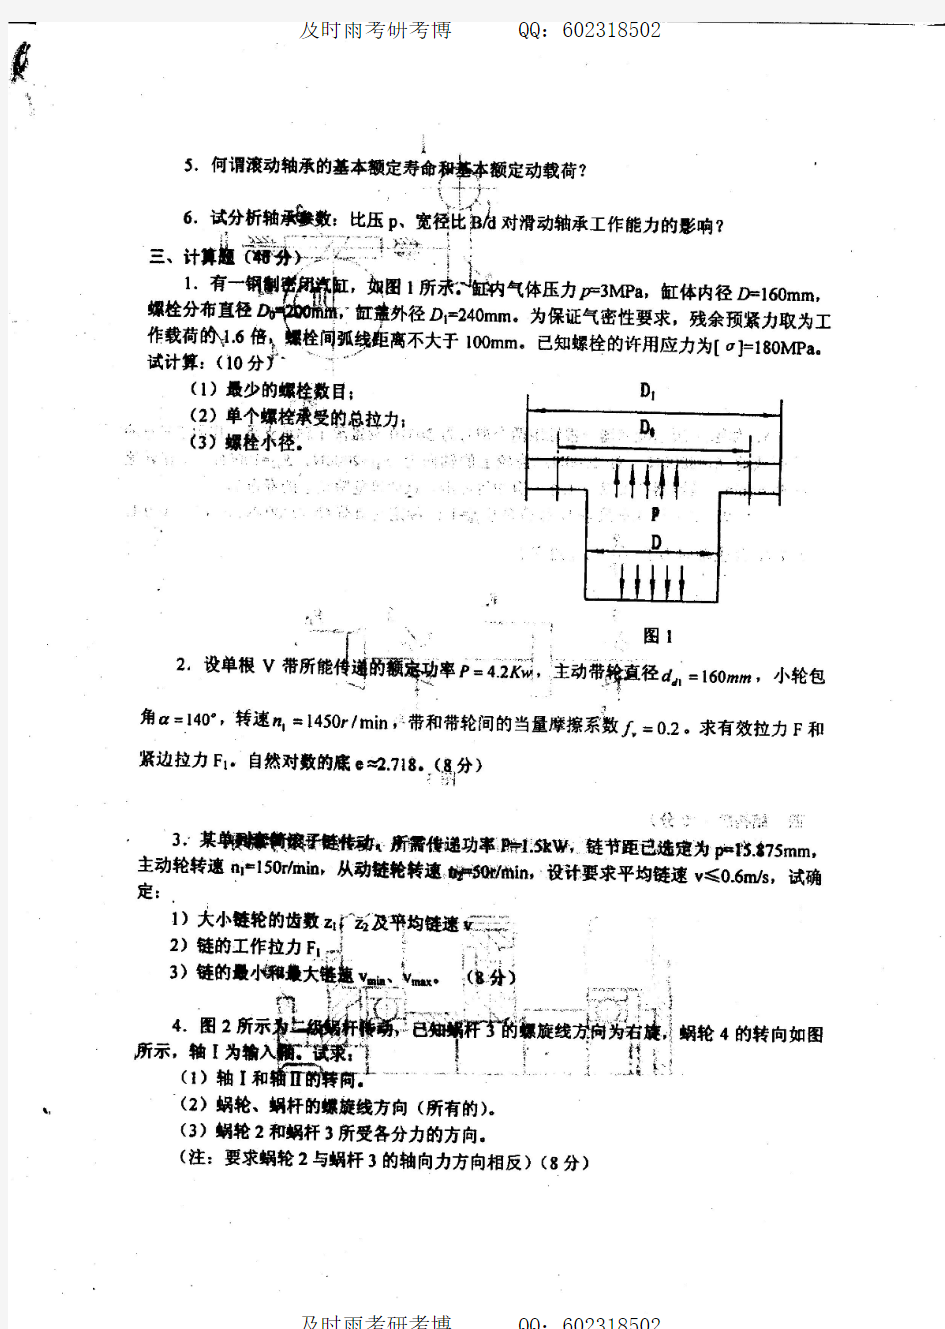 2004年南京理工大学机械设计考研复试试题